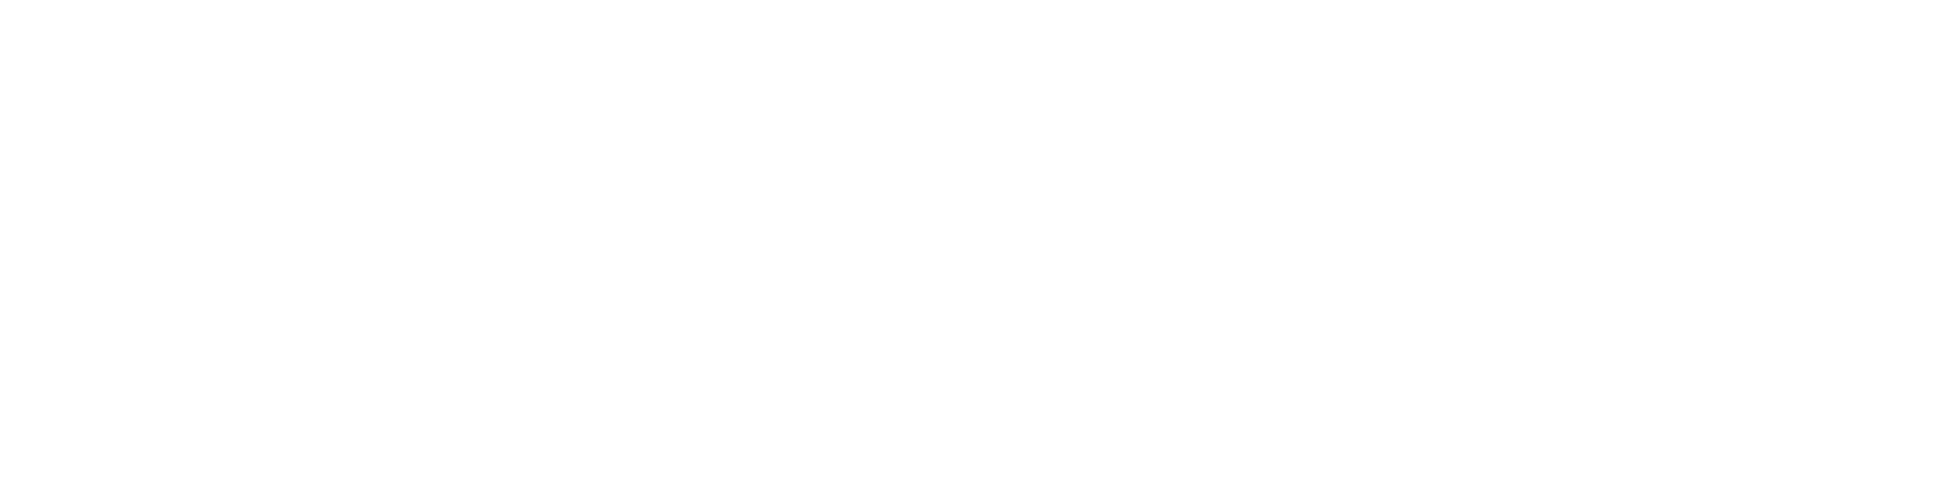 inproject HR Business Management Logo weiss